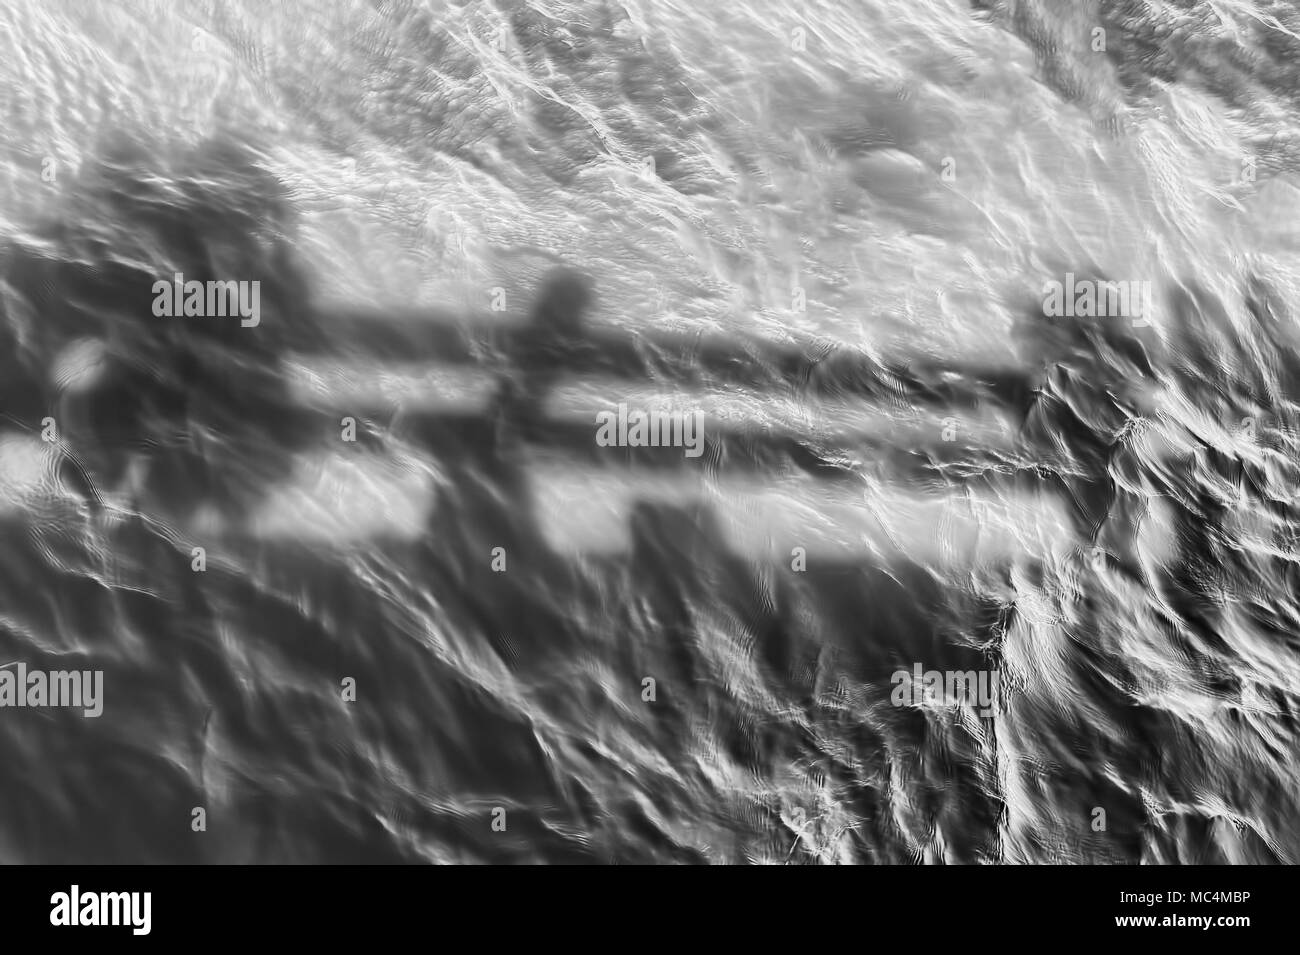 Minimalistische Schwarz-Weiß-Bild der Schatten im Wasser unter einem Pier am Columbia River Gorge widerspiegelt Stockfoto